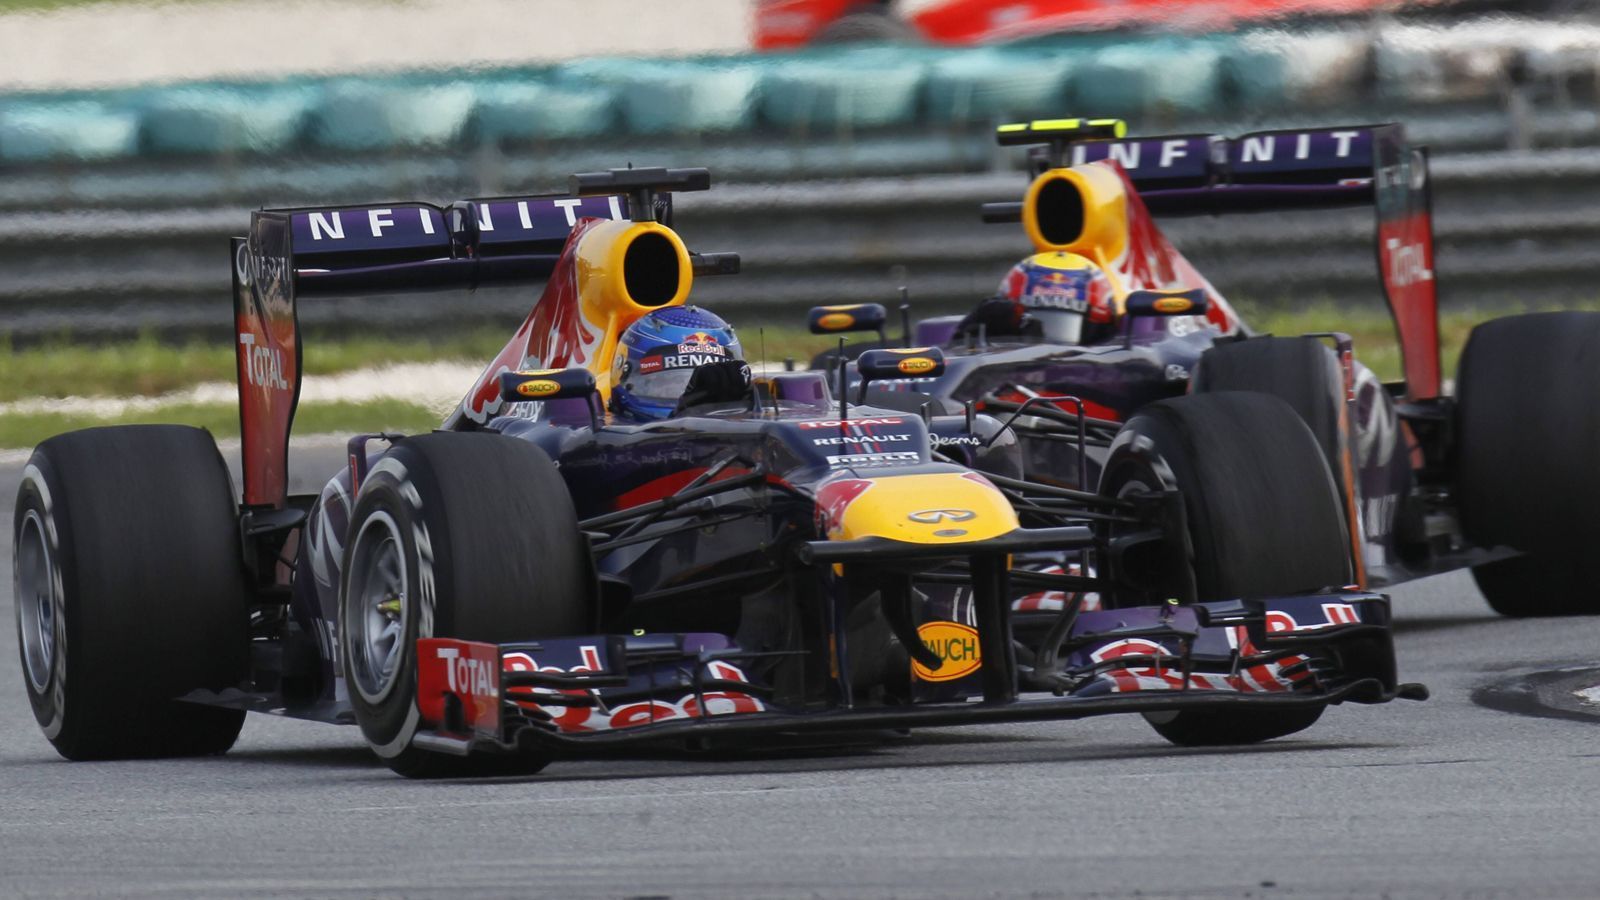 
                <strong>Sepang International Circuit, Malaysia</strong><br>
                Unterdessen prüft auch Malaysia seine Möglichkeiten für eine potenzielle Rückkehr in den Formel-1-Kalender, wie die "Jakarta Post" berichtet. Es wäre ein Event, auf das sich wohl viele Fans freuen dürften, da es aufgrund des anspruchsvollen Kurses meist weit oben auf der Favoritenliste der Zuschauer stand. Legendär war unter anderem der Schlagabtausch der beiden früheren Red-Bull-Teamkollegen Mark Webber und Sebastian Vettel im Jahr 2013. Der Heppenheimer überholte dabei den in Führung liegenden Australier und fuhr zum Sieg, obwohl es die interne Team-Anordnung gab, die Positionen zu halten. Ein Comeback des malaysischen Grand Prix scheint zwar frühestens in zwei bis drei Jahren realistisch, würde aber wohl viele spannende Rennen versprechen.
              